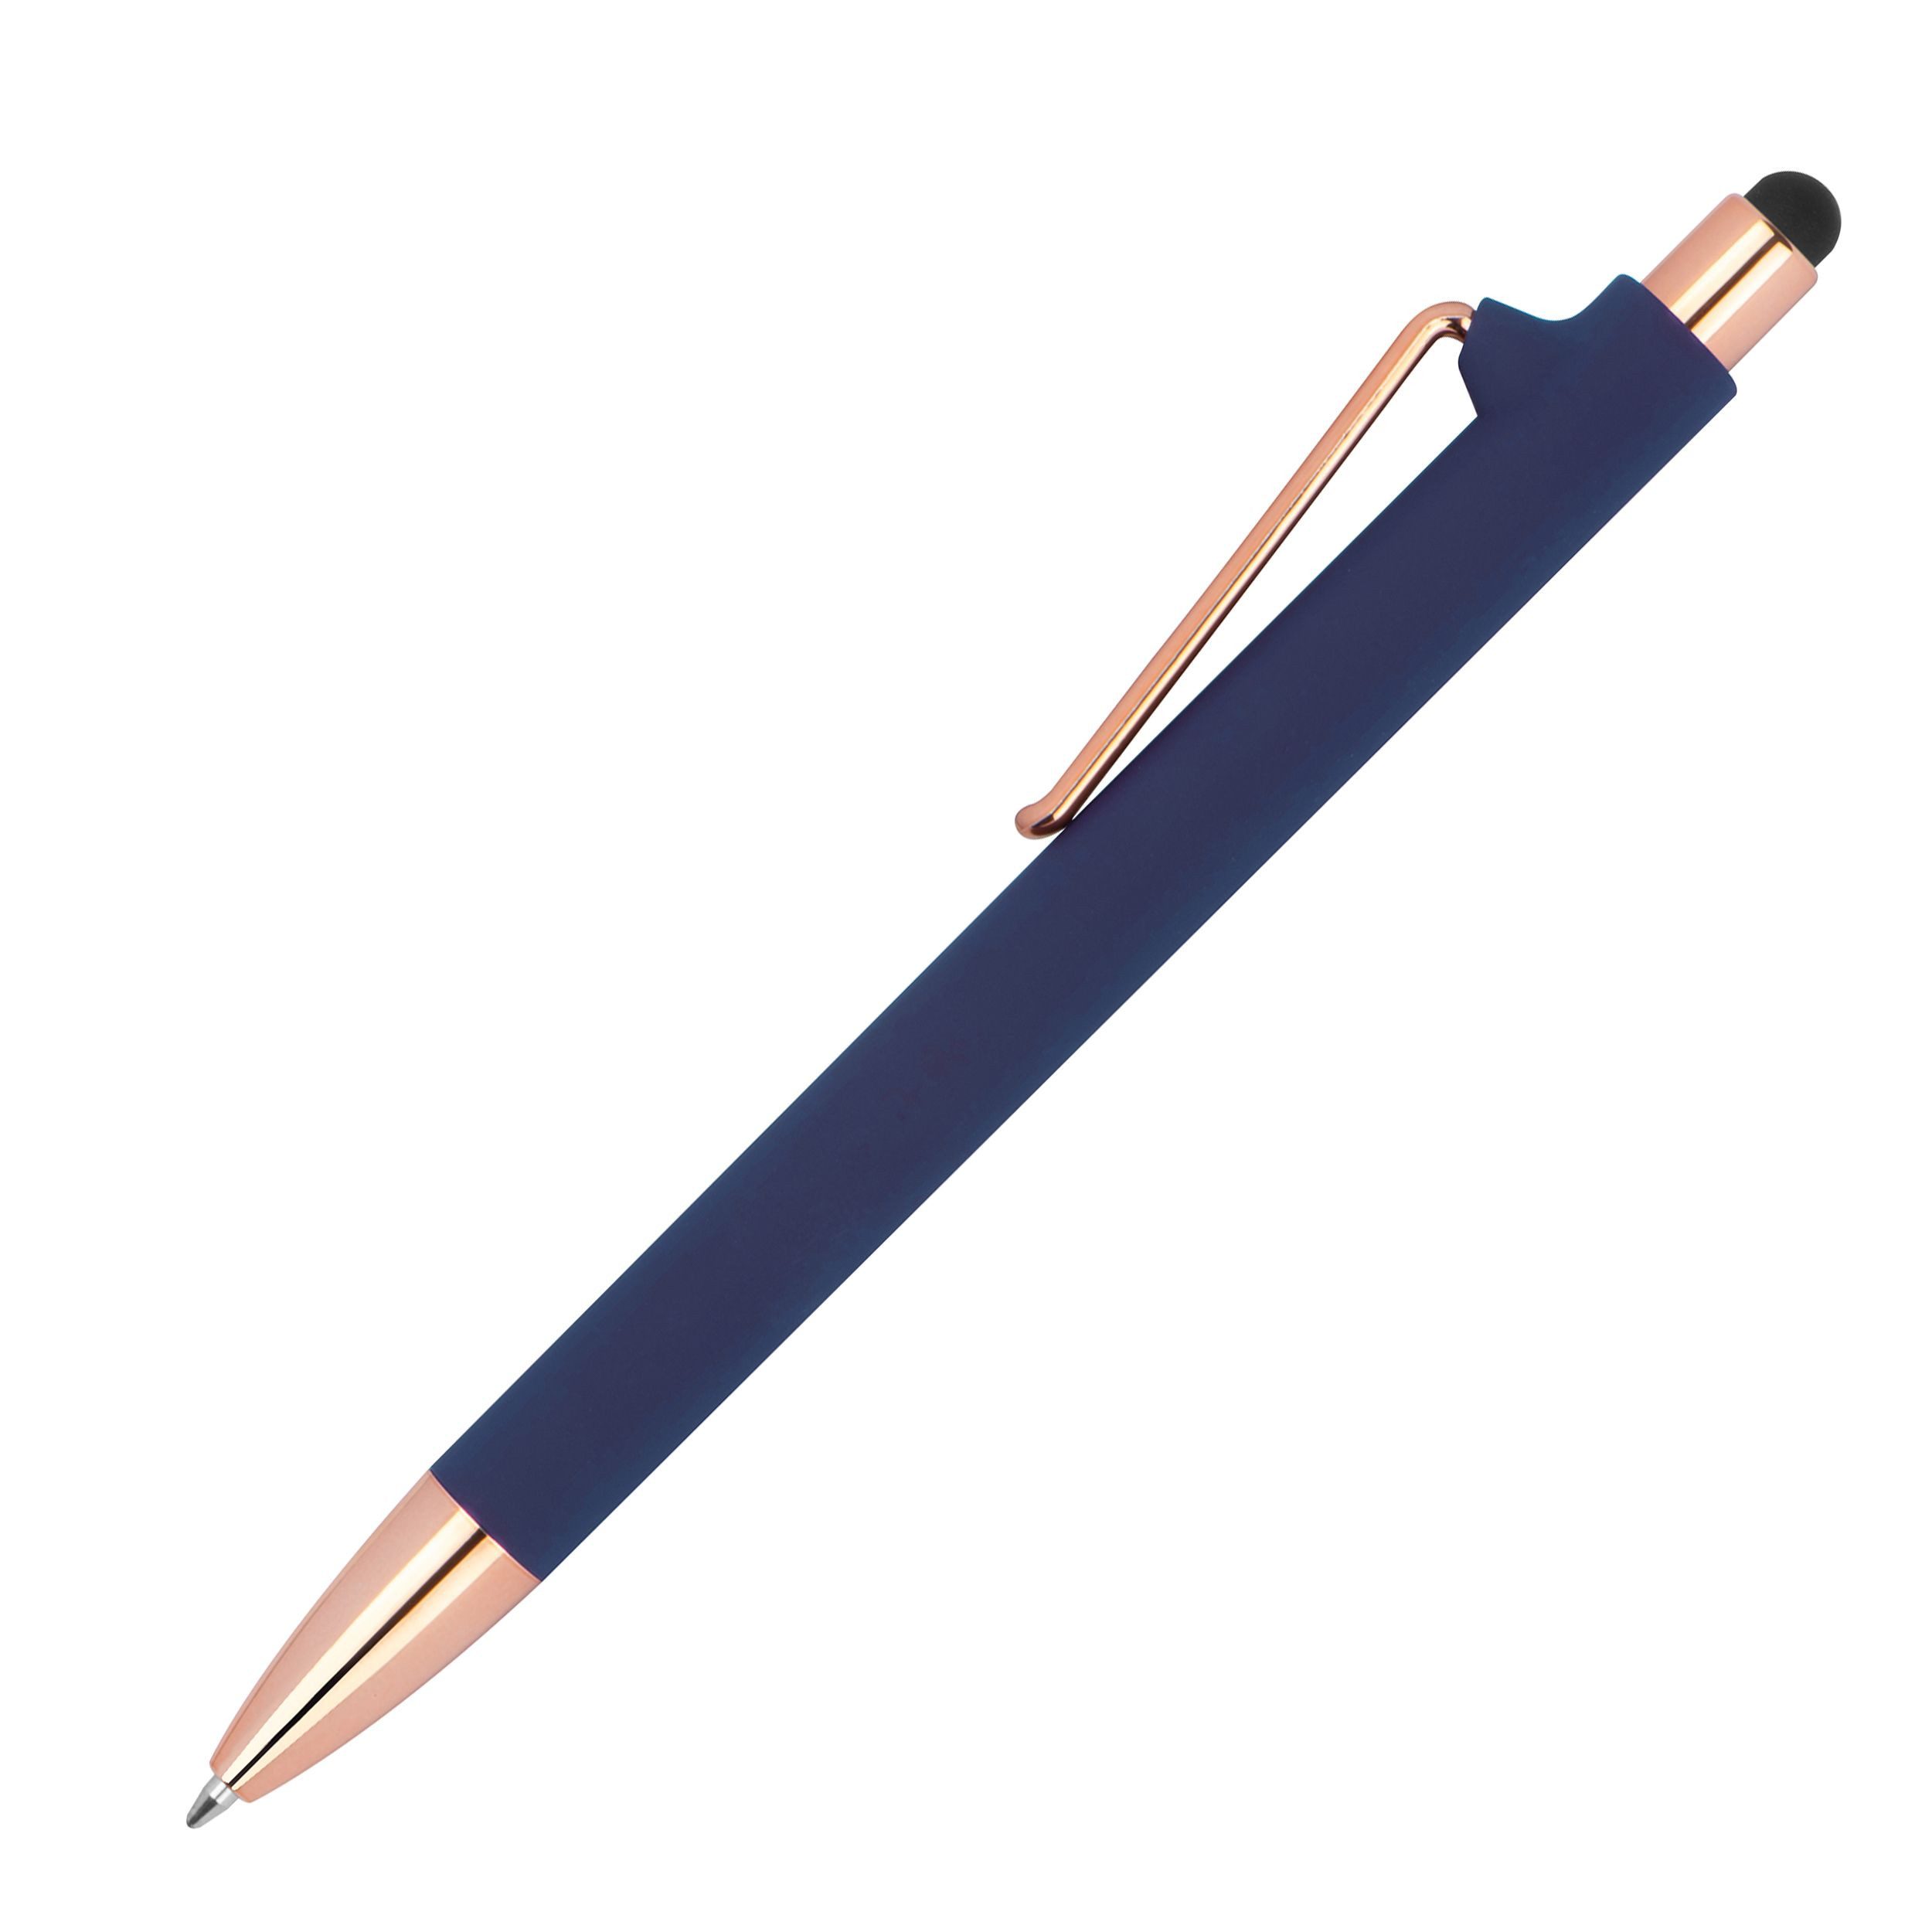 Livepac Office Kugelschreiber 10 Touchpen-Kugelschreiber aus Metall / gummiert / Farbe: roségold-dun